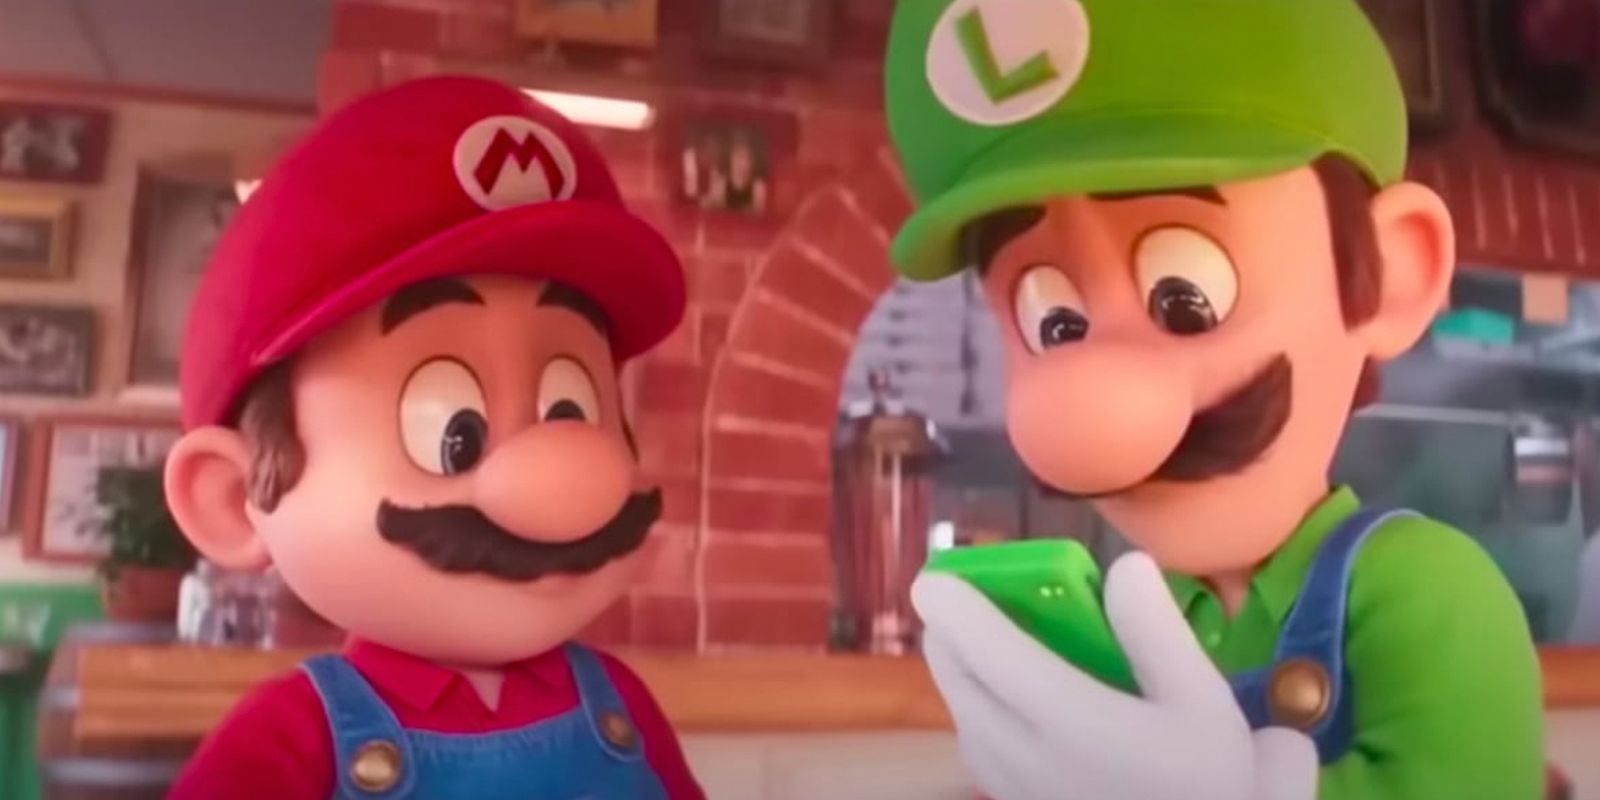 Luigi recebe um telefonema no filme The Super Mario Bros.